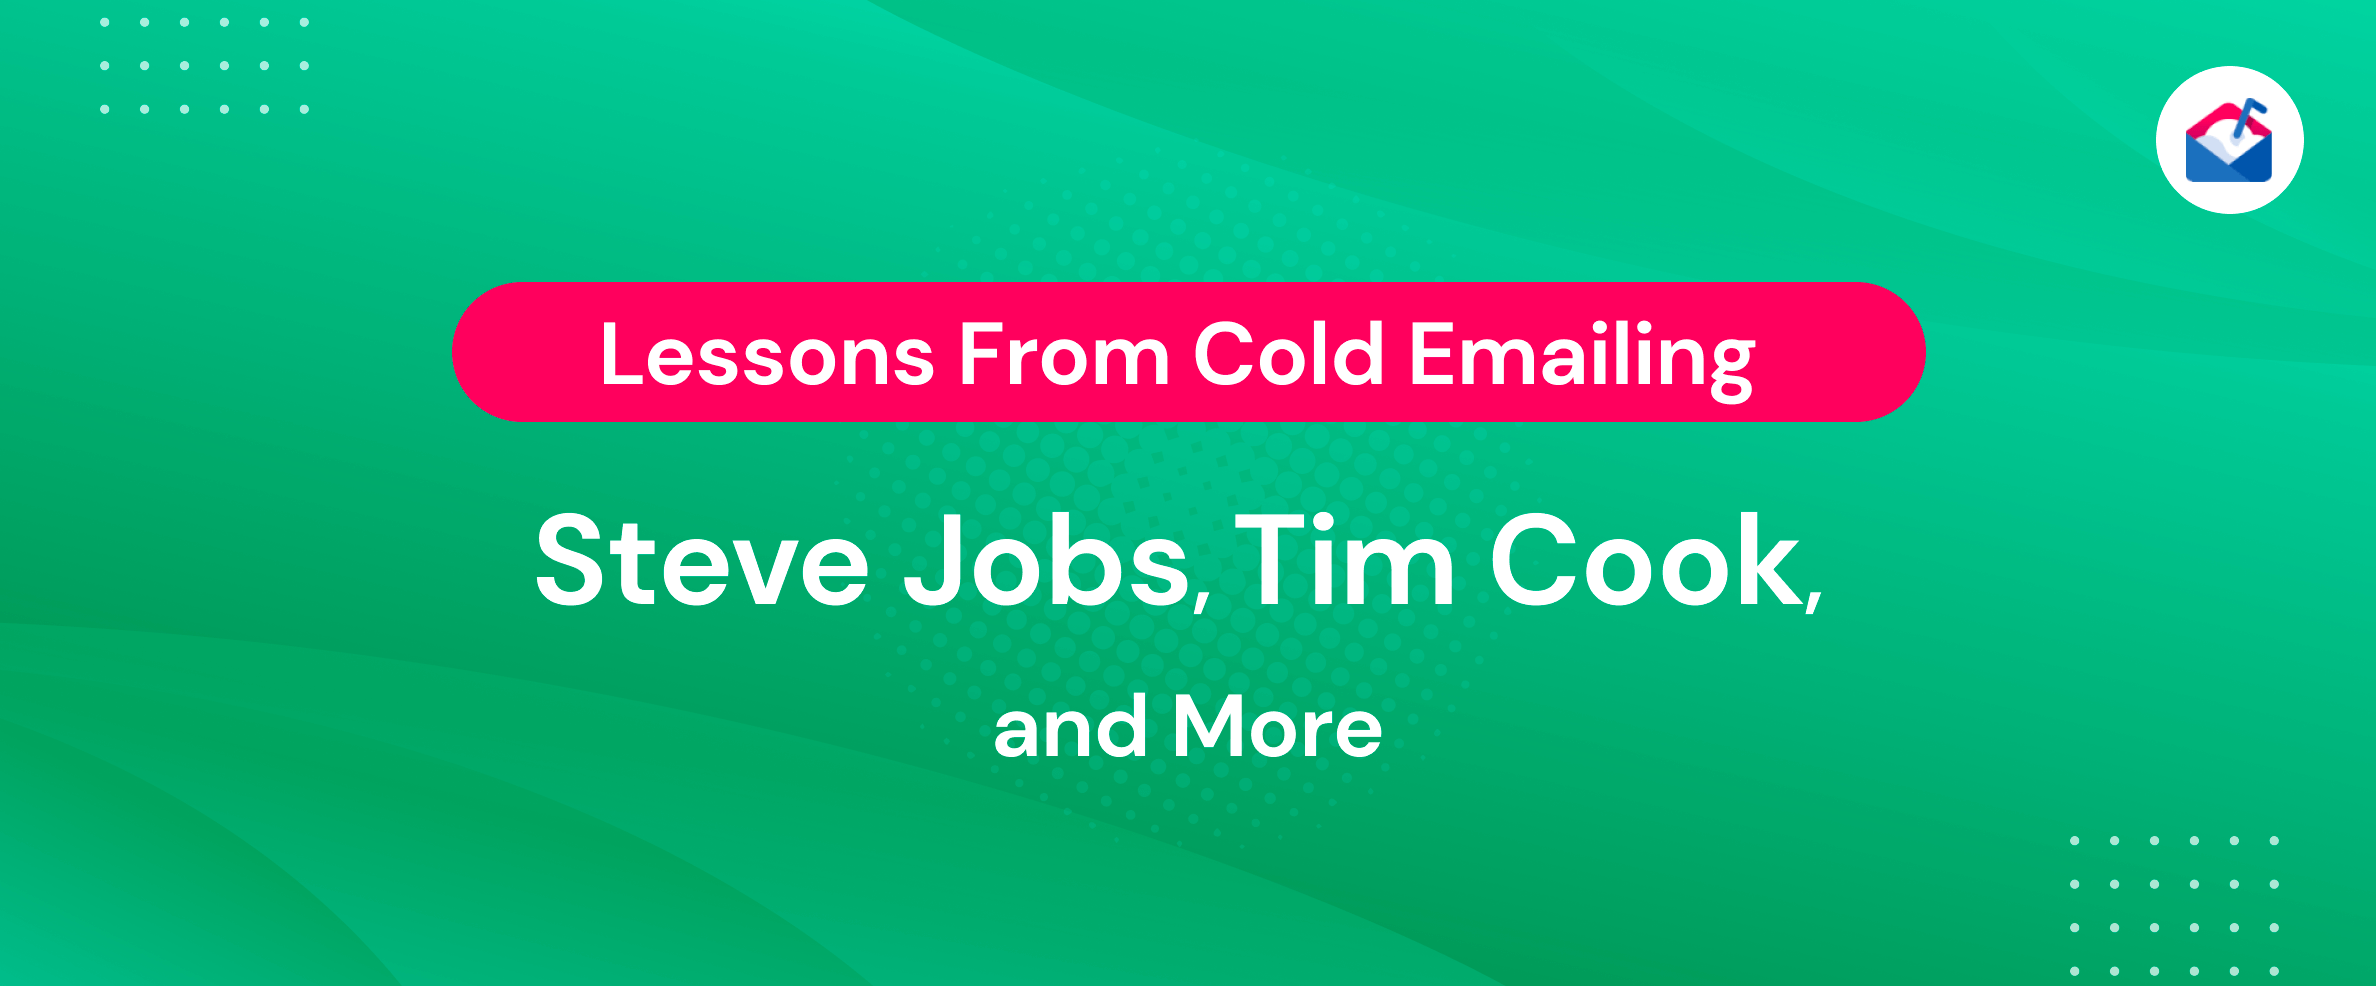 冷电子邮件史蒂夫·乔布斯、蒂姆·库克等人的经验教训